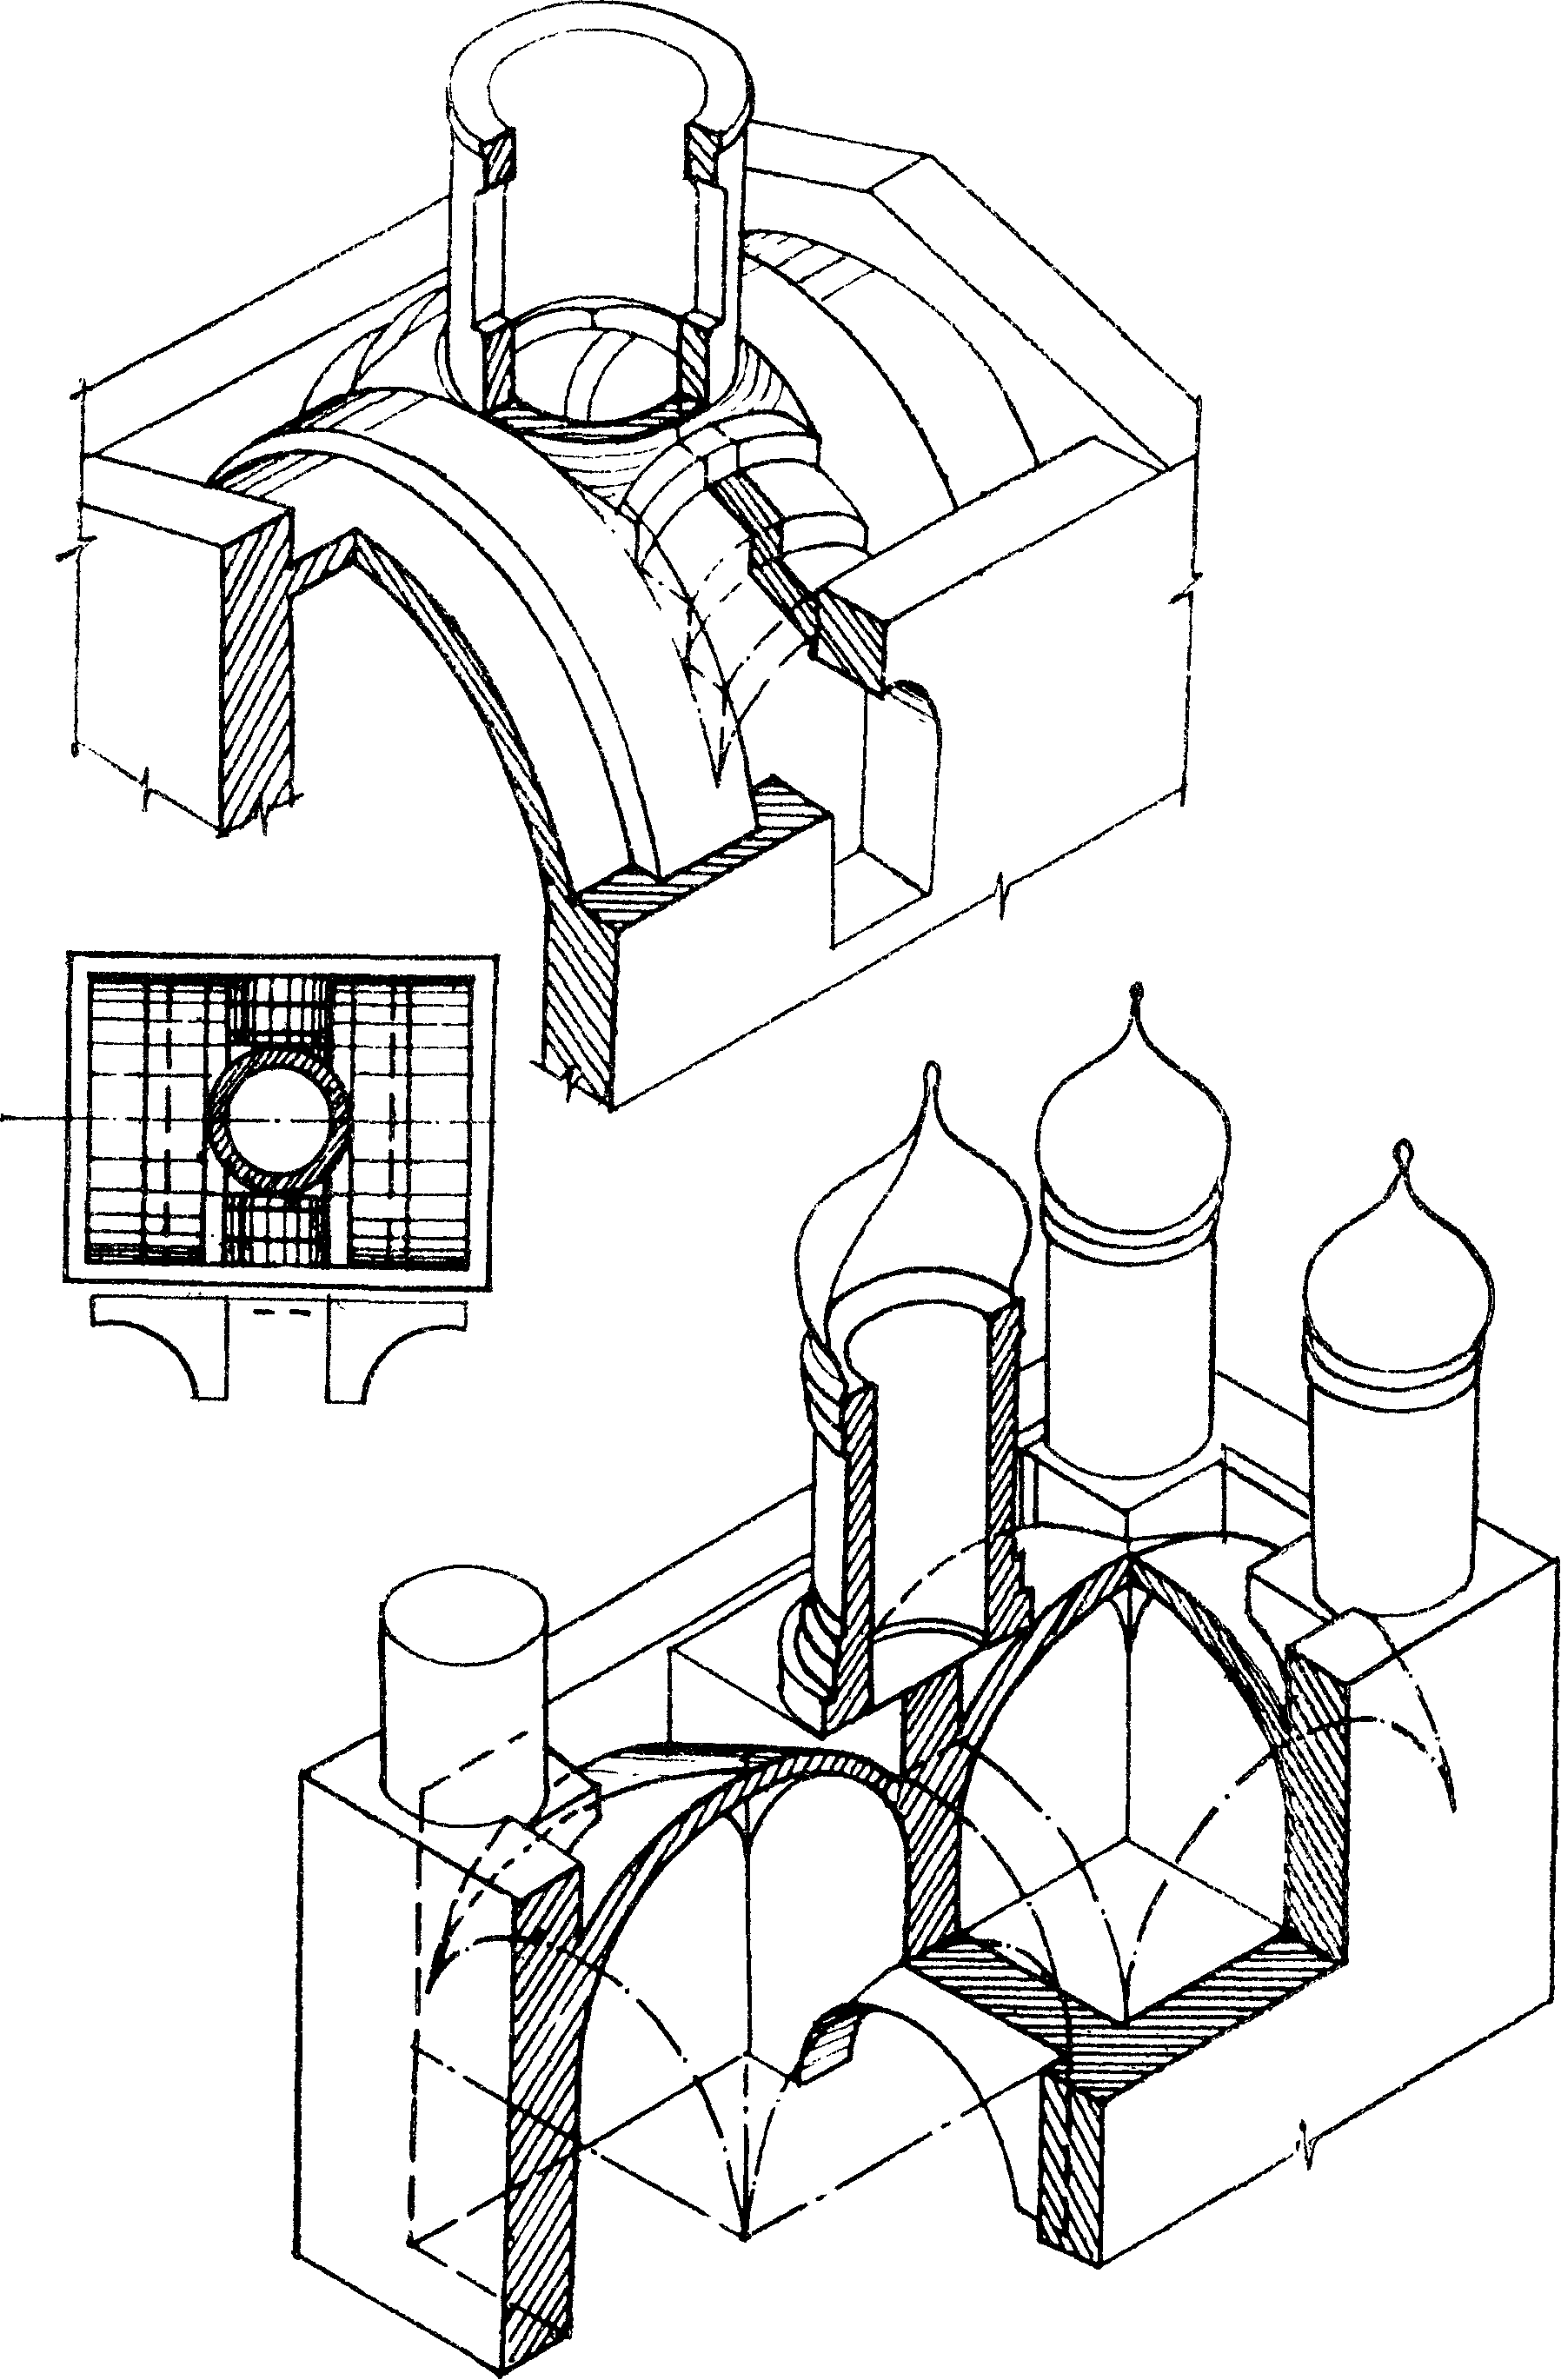 крестово купольный тип храма